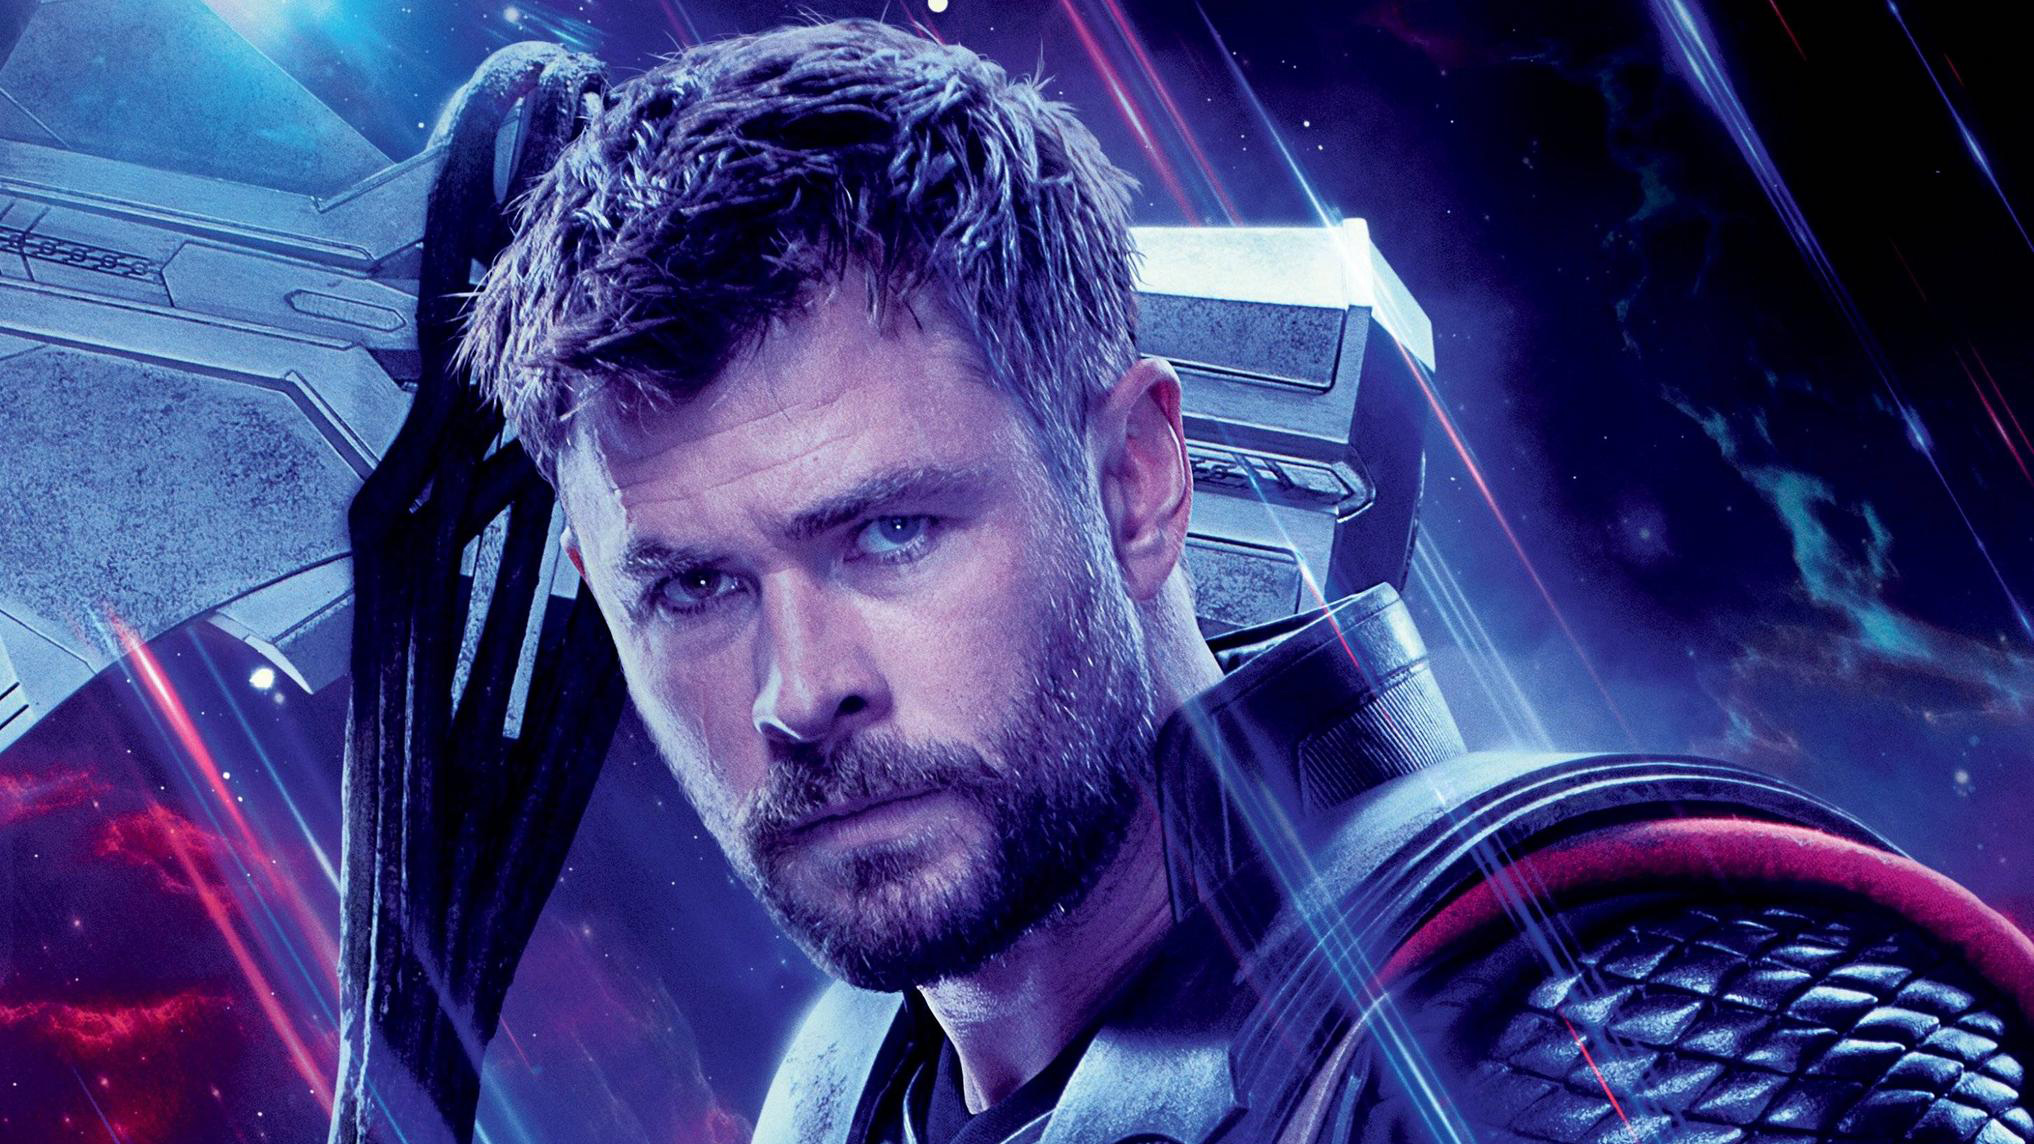 Thor Avengers Endgame Avengers Infinity War Science Fiction Movie Characters Mjolnir Lightning 2034x1144